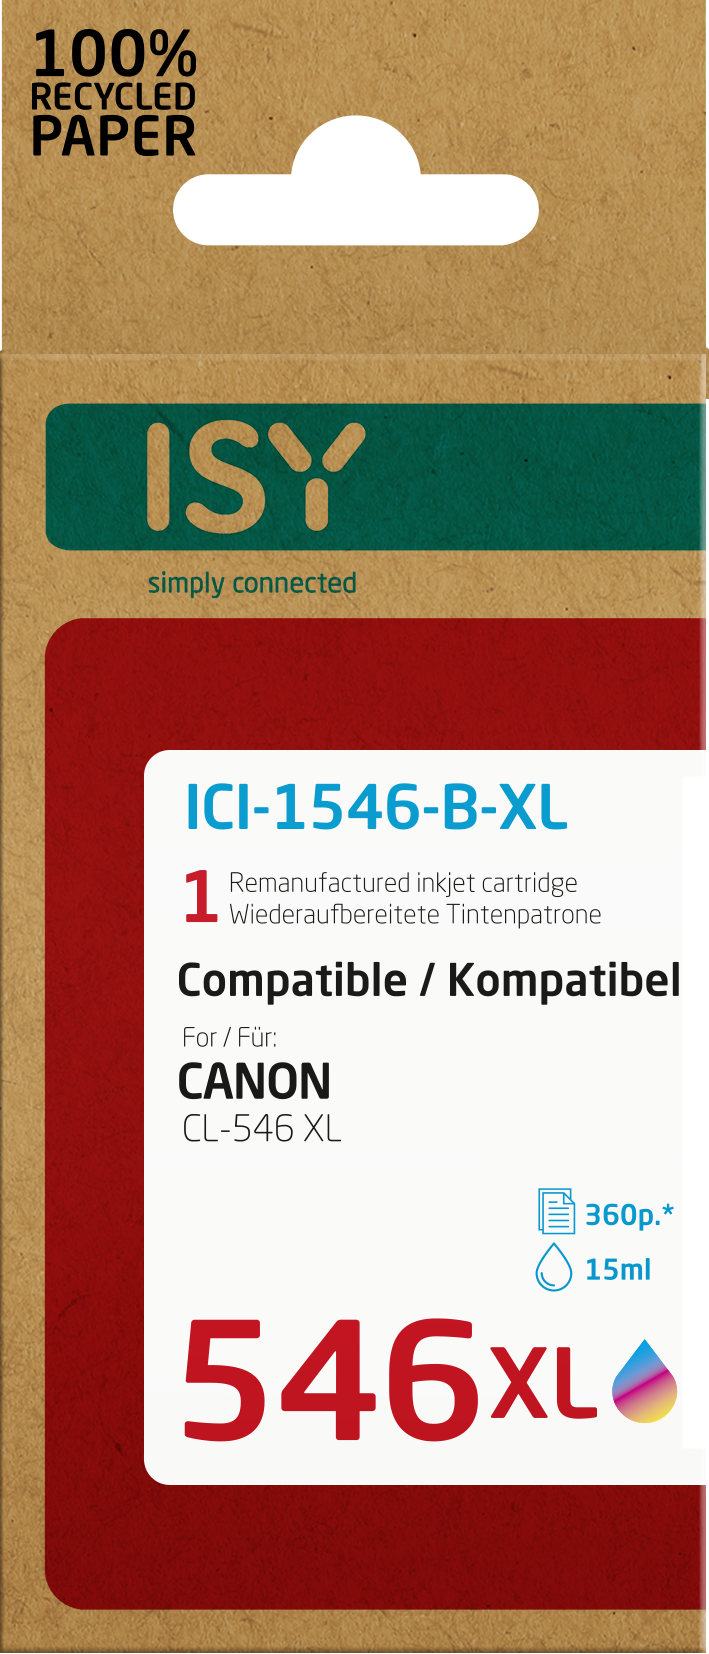 Tintenpatrone ICI-1546-B-XL ISY Mehrfarbig